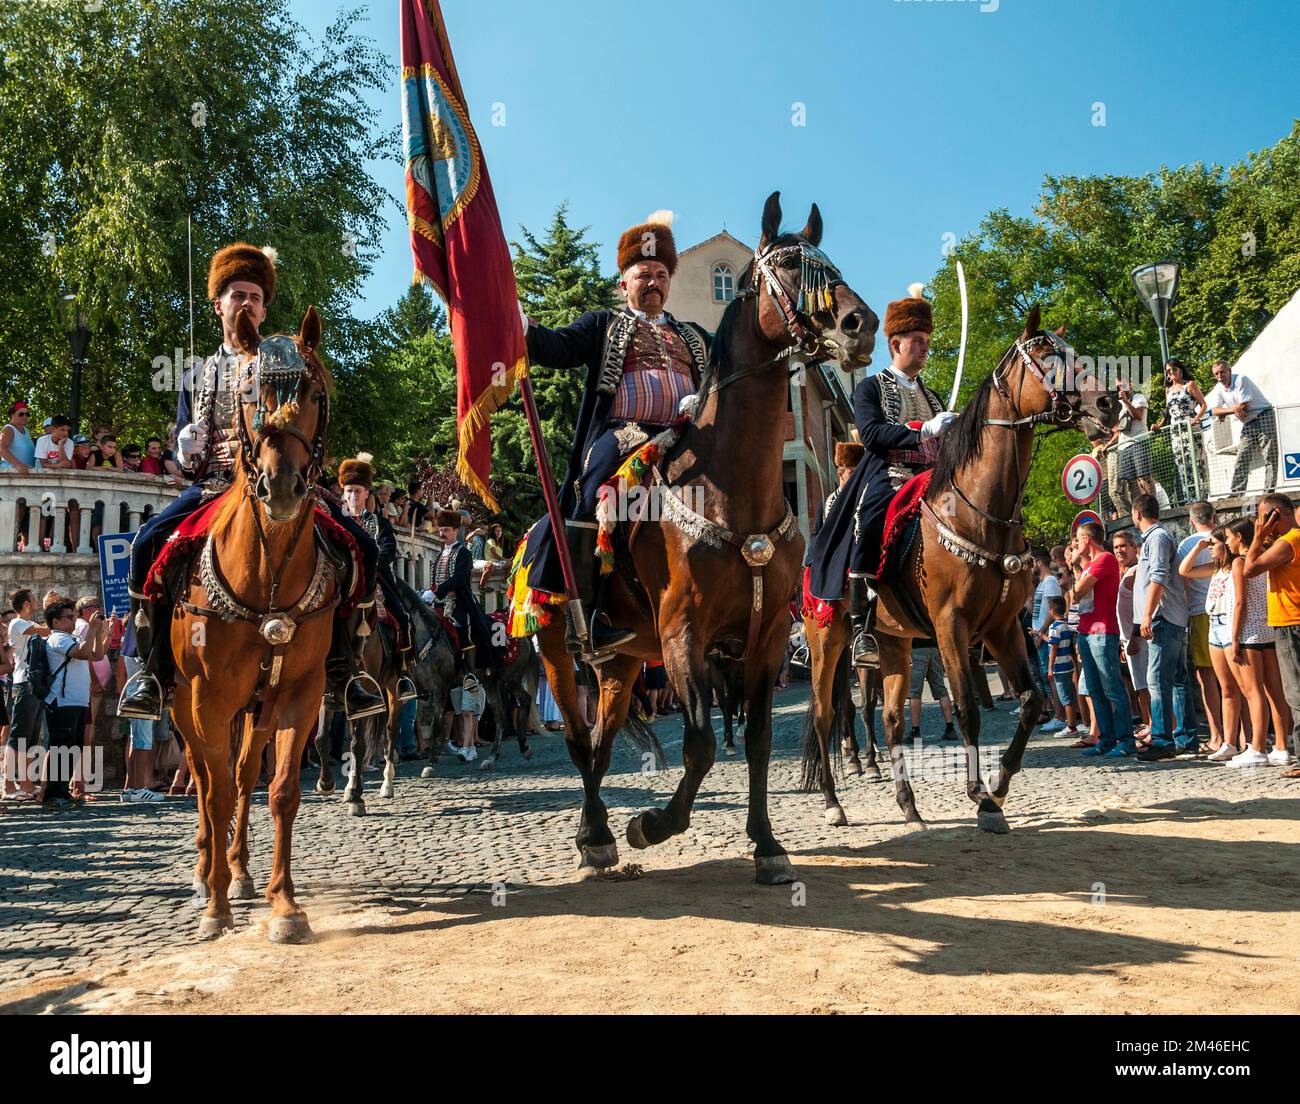 Stipe Bilandzic CIPA, alkar cavaliere standard portatore è in sella al suo cavallo seguito dai suoi scagnozzi al 300 ° festival alka a signo (sinj), in Croazia tenuto Foto Stock